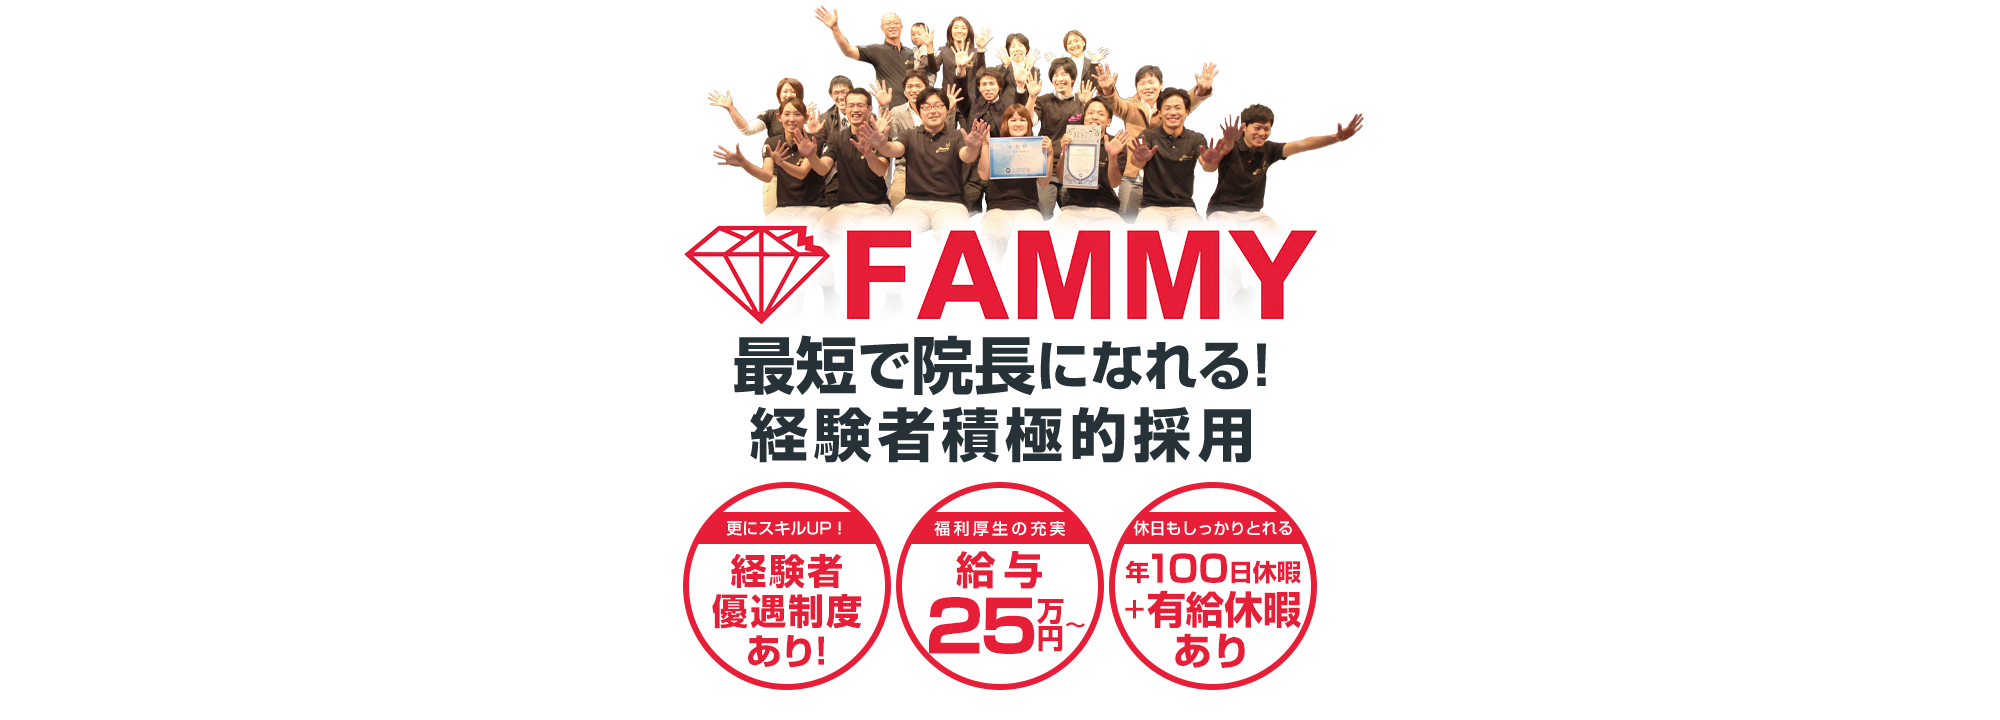 株式会社 Fammy共に働く仲間募集中